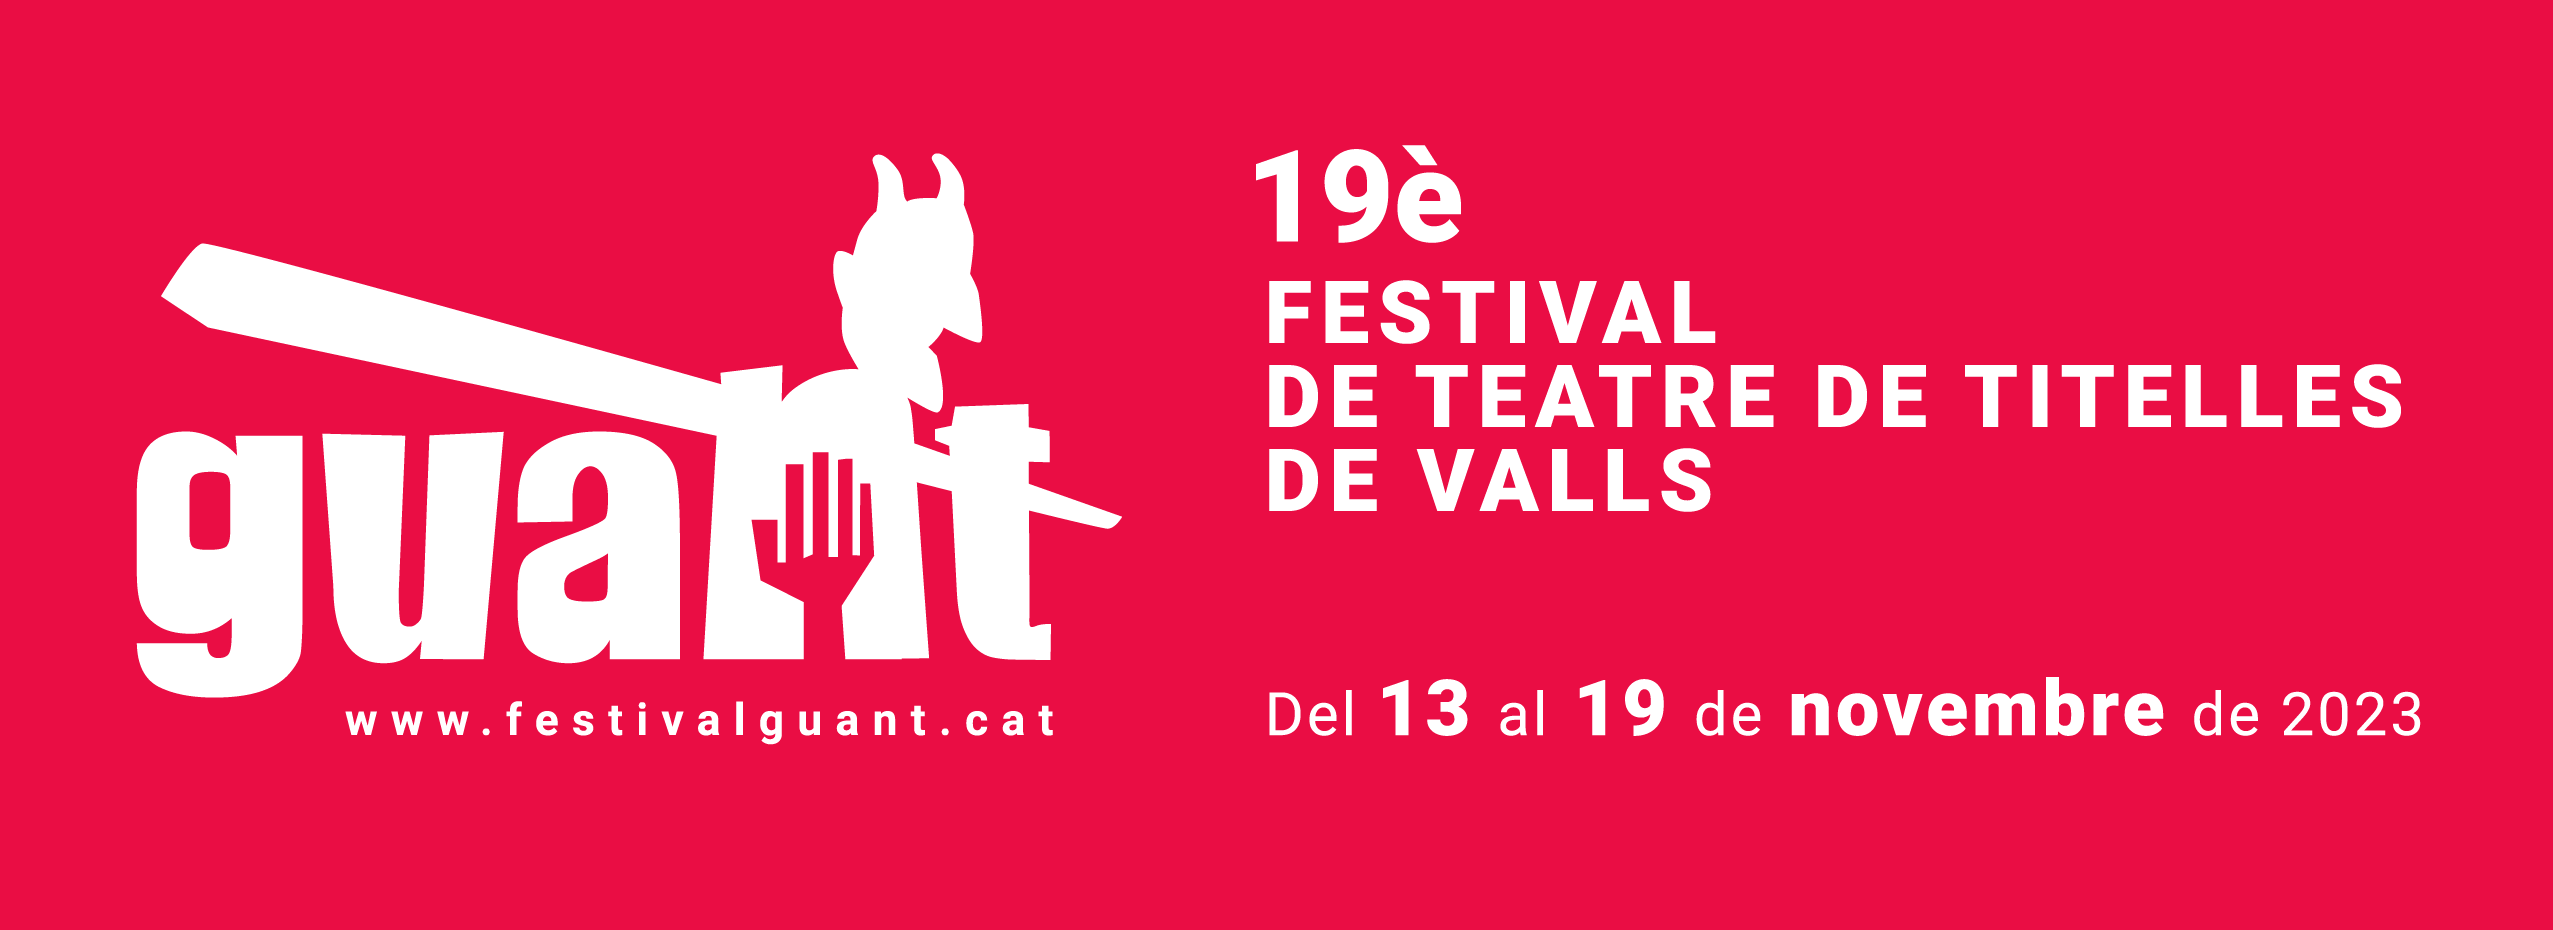 19è Festival internacional de teatre de titelles de Valls | Dins de la panxa del llop